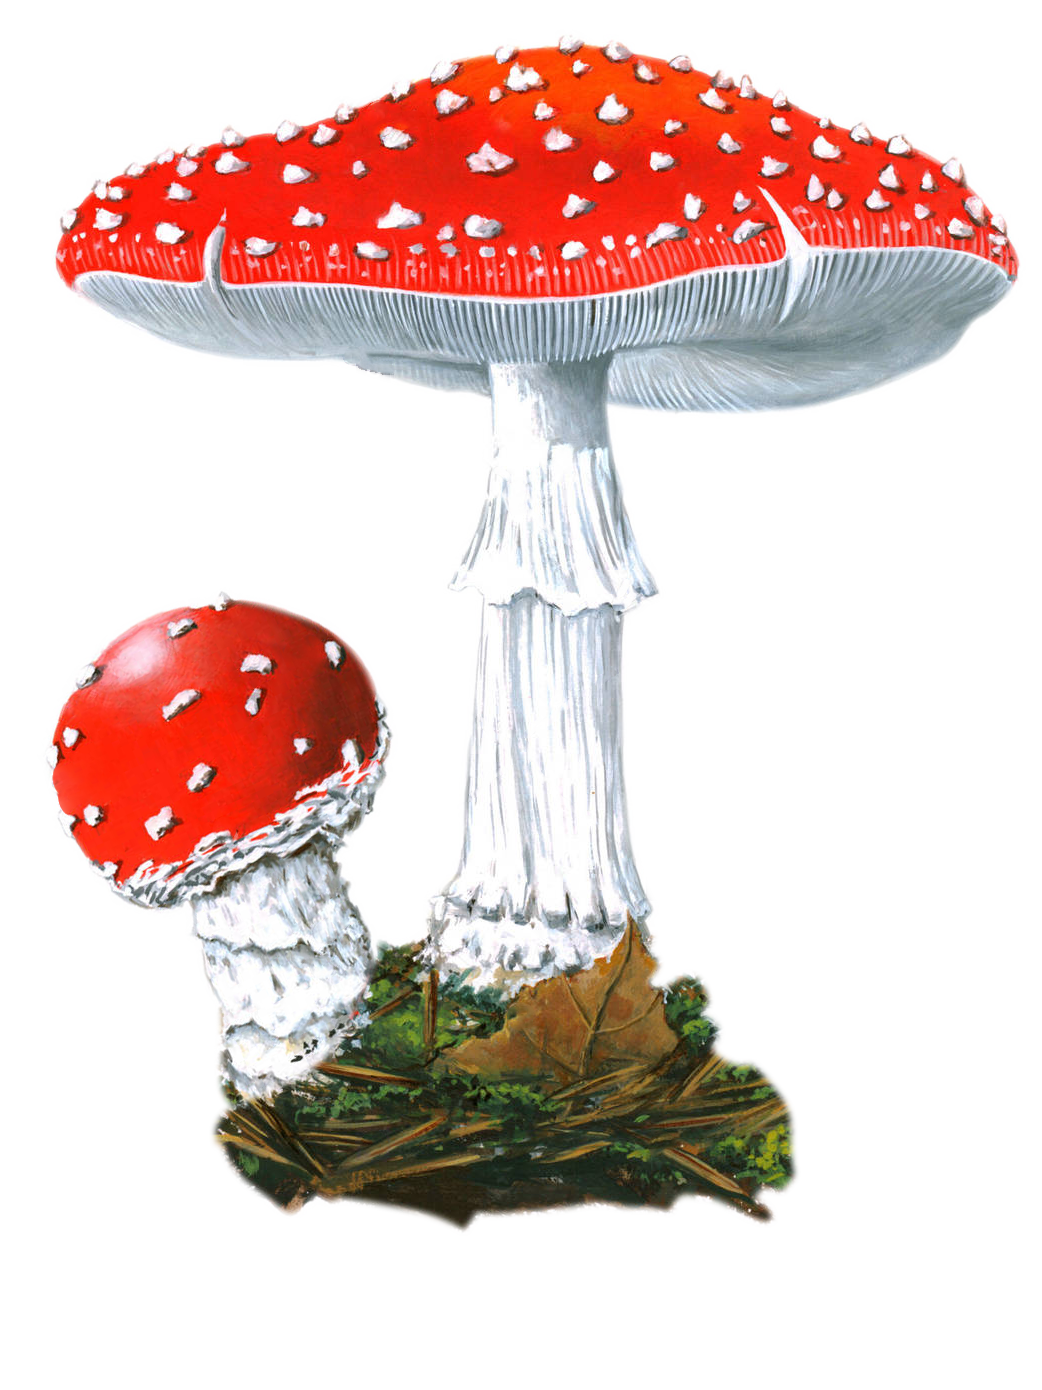 Полезные свойства грибов шиитаке: что входит в состав, какими лечебными свойствами обладают. Можно ли ими отравиться. Кому противопоказаны.